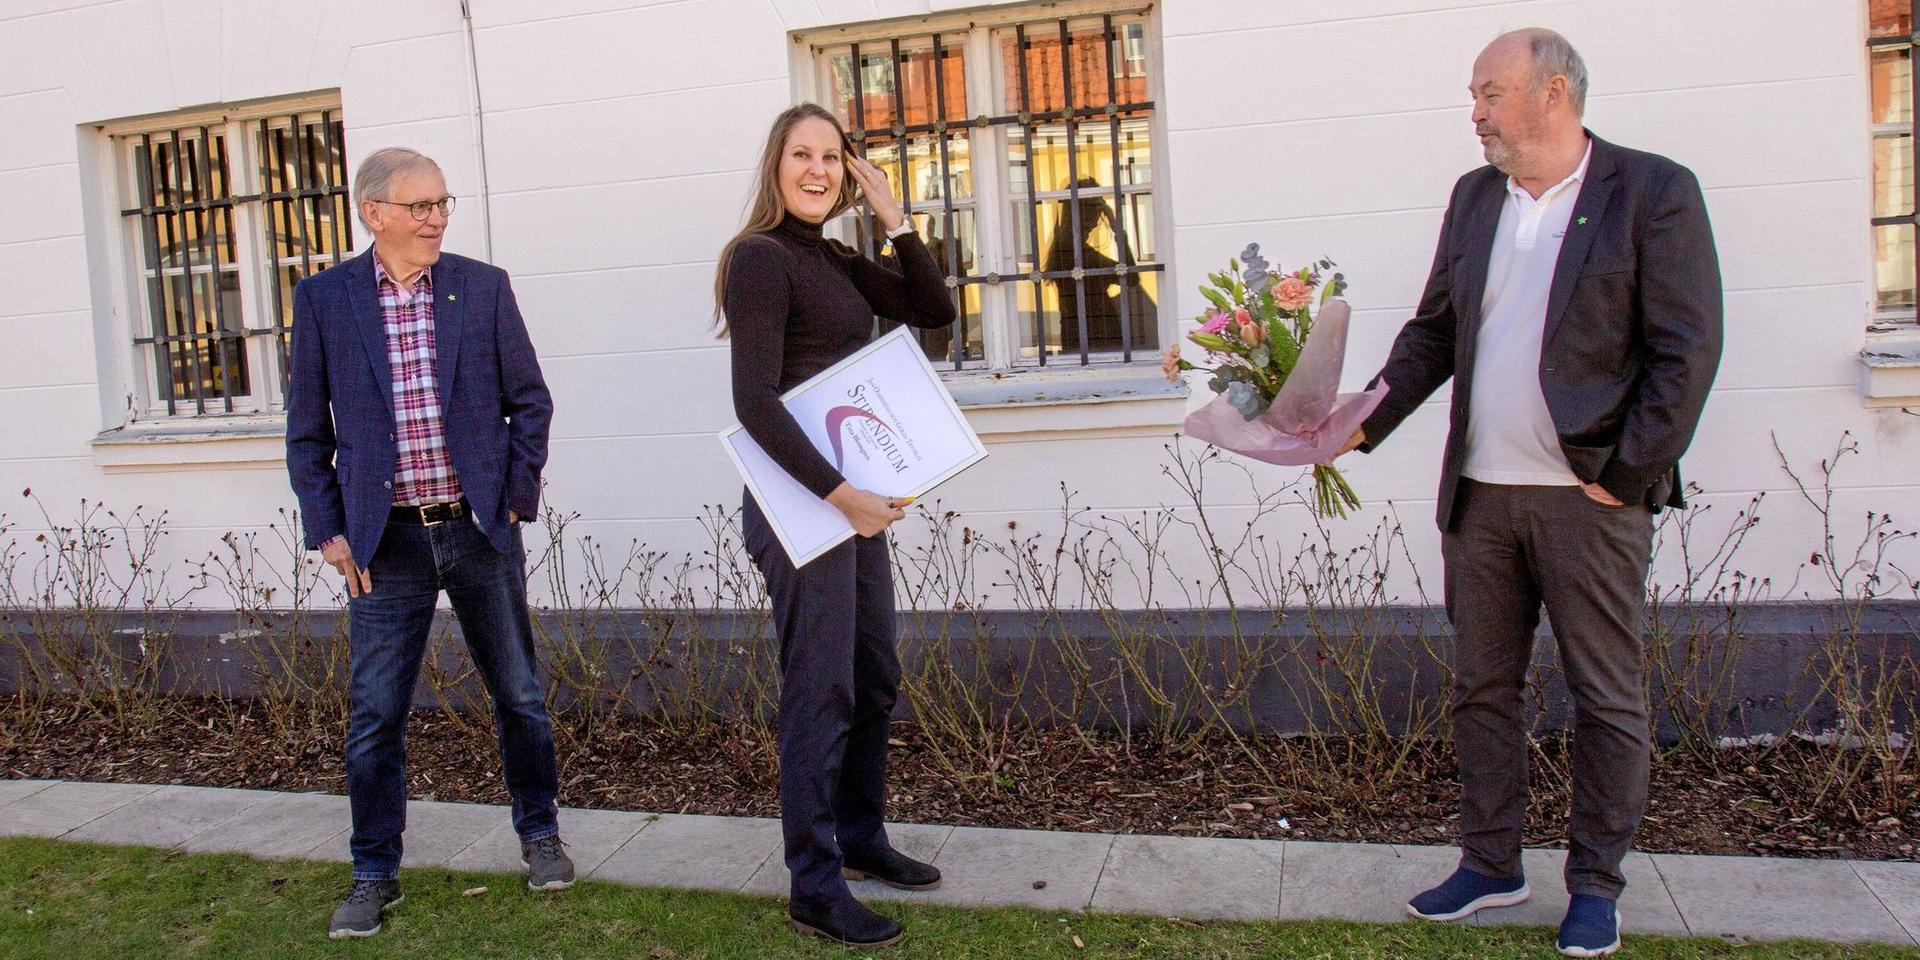 Stipendieutdelning på coronatryggt avstånd. Tommy Paulison och Roy Karlsson från Gamla Laholm överräcker blomsterkvast och diplom till årets stipendiat Tina Blomberg. I priset ingår också en summa pengar.